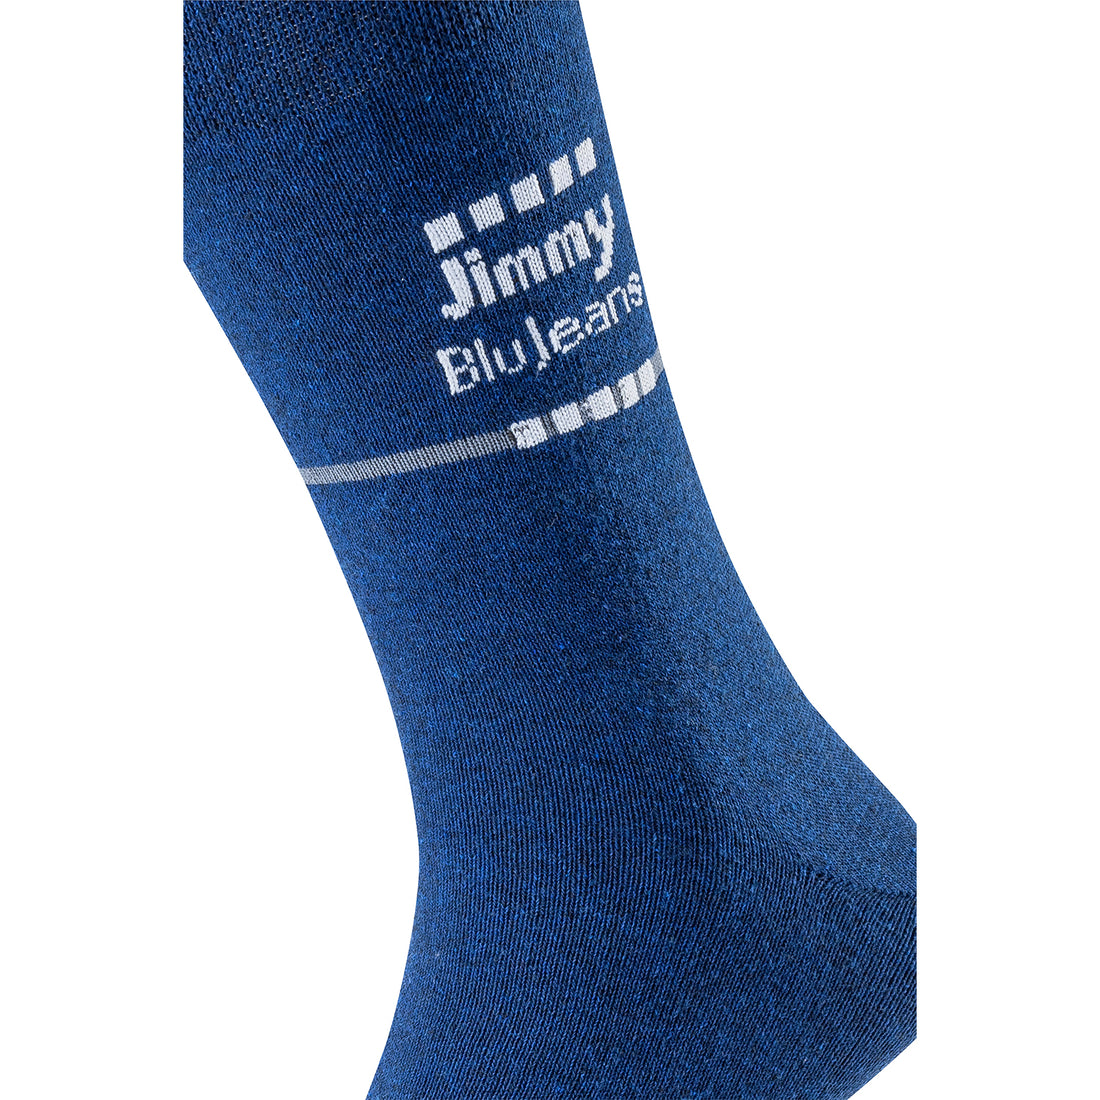 ChiliLifestyle Jimmy BluJeans Socken, 4 Paar, für Damen und Herren